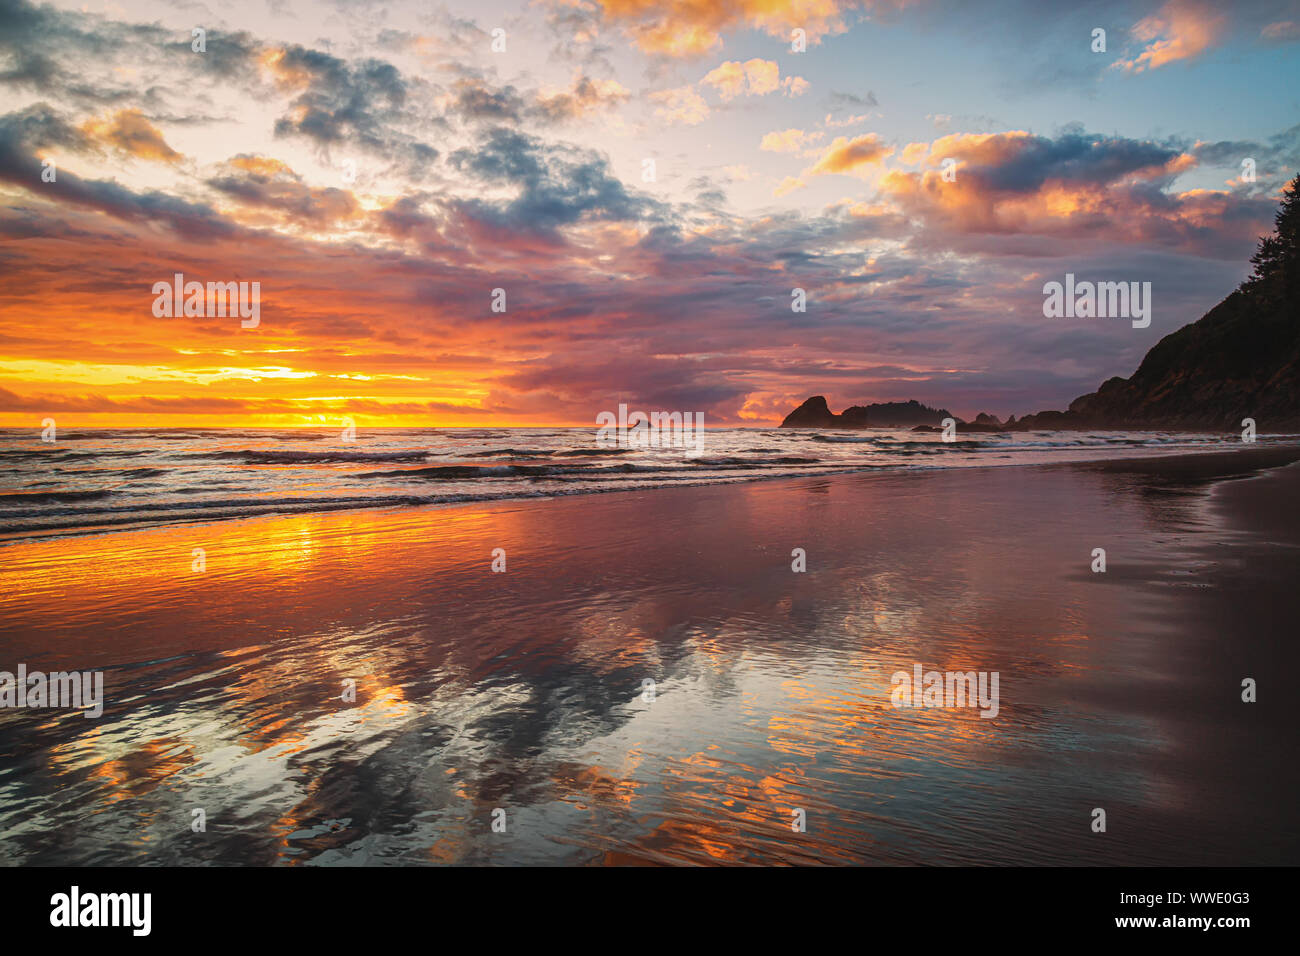 Una imagen a color de un paisaje espectacular en una playa del norte de California. Foto de stock